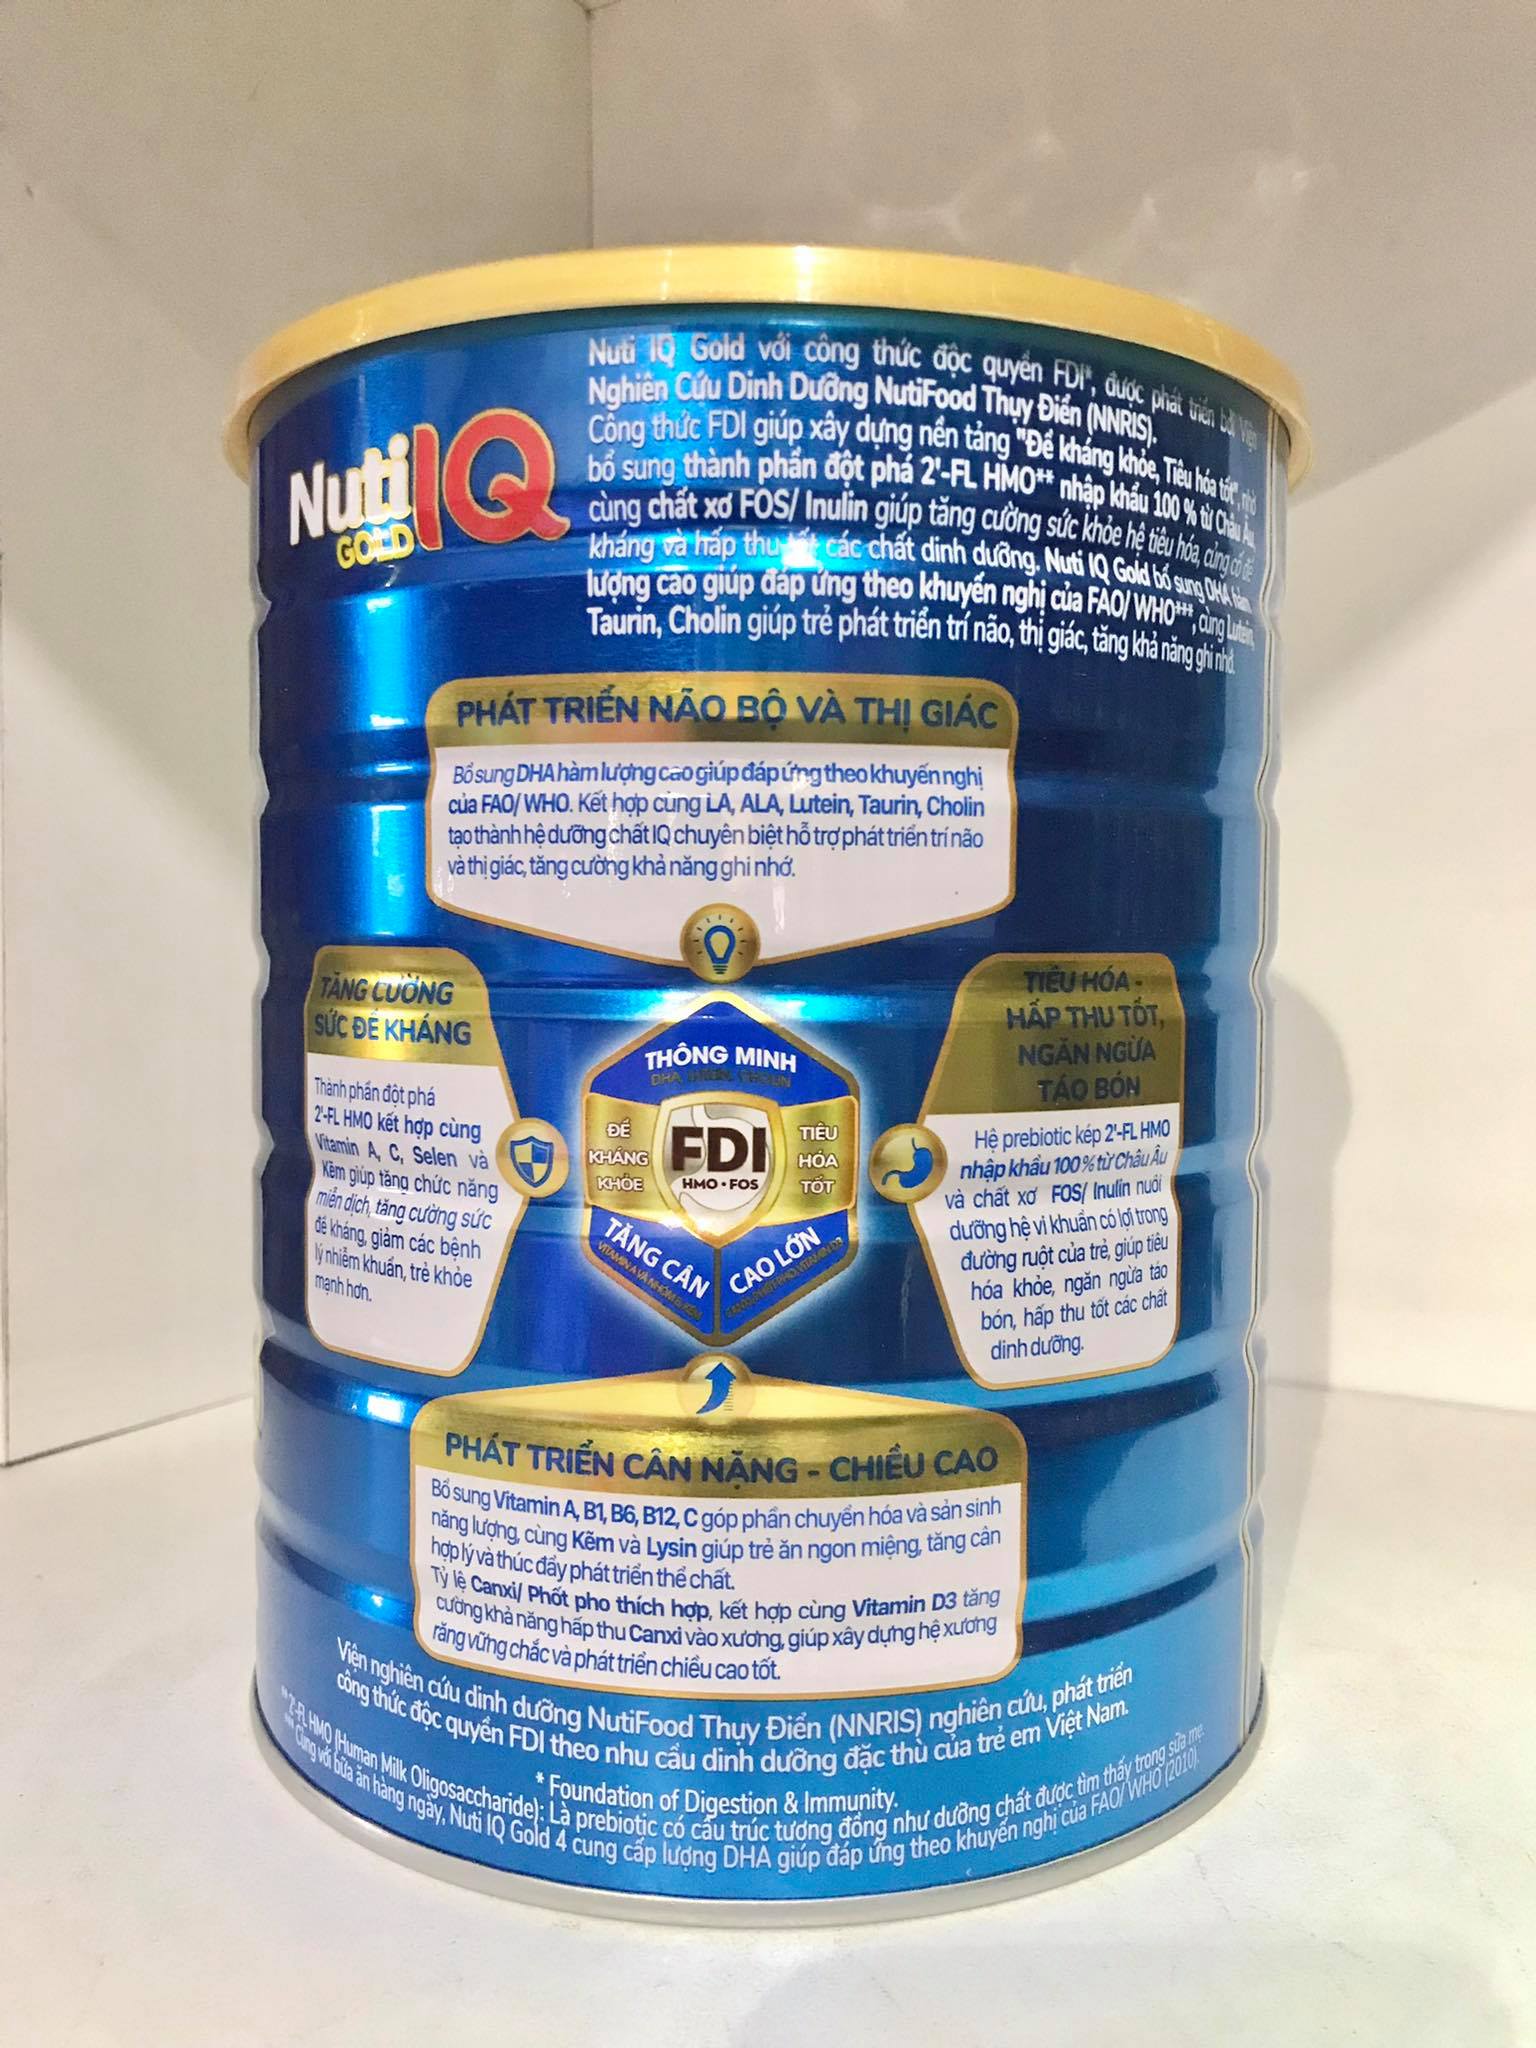 Bộ 5 lon sữa Nuti IQ Gold 3 1.5kg (mới) - Phát triển não bộ và thị giác, Tăng cường sức đề kháng, Phát triển cân nặng - chiều cao, Tiêu hoá - hấp thu tốt, Ngăn ngừa táo bón